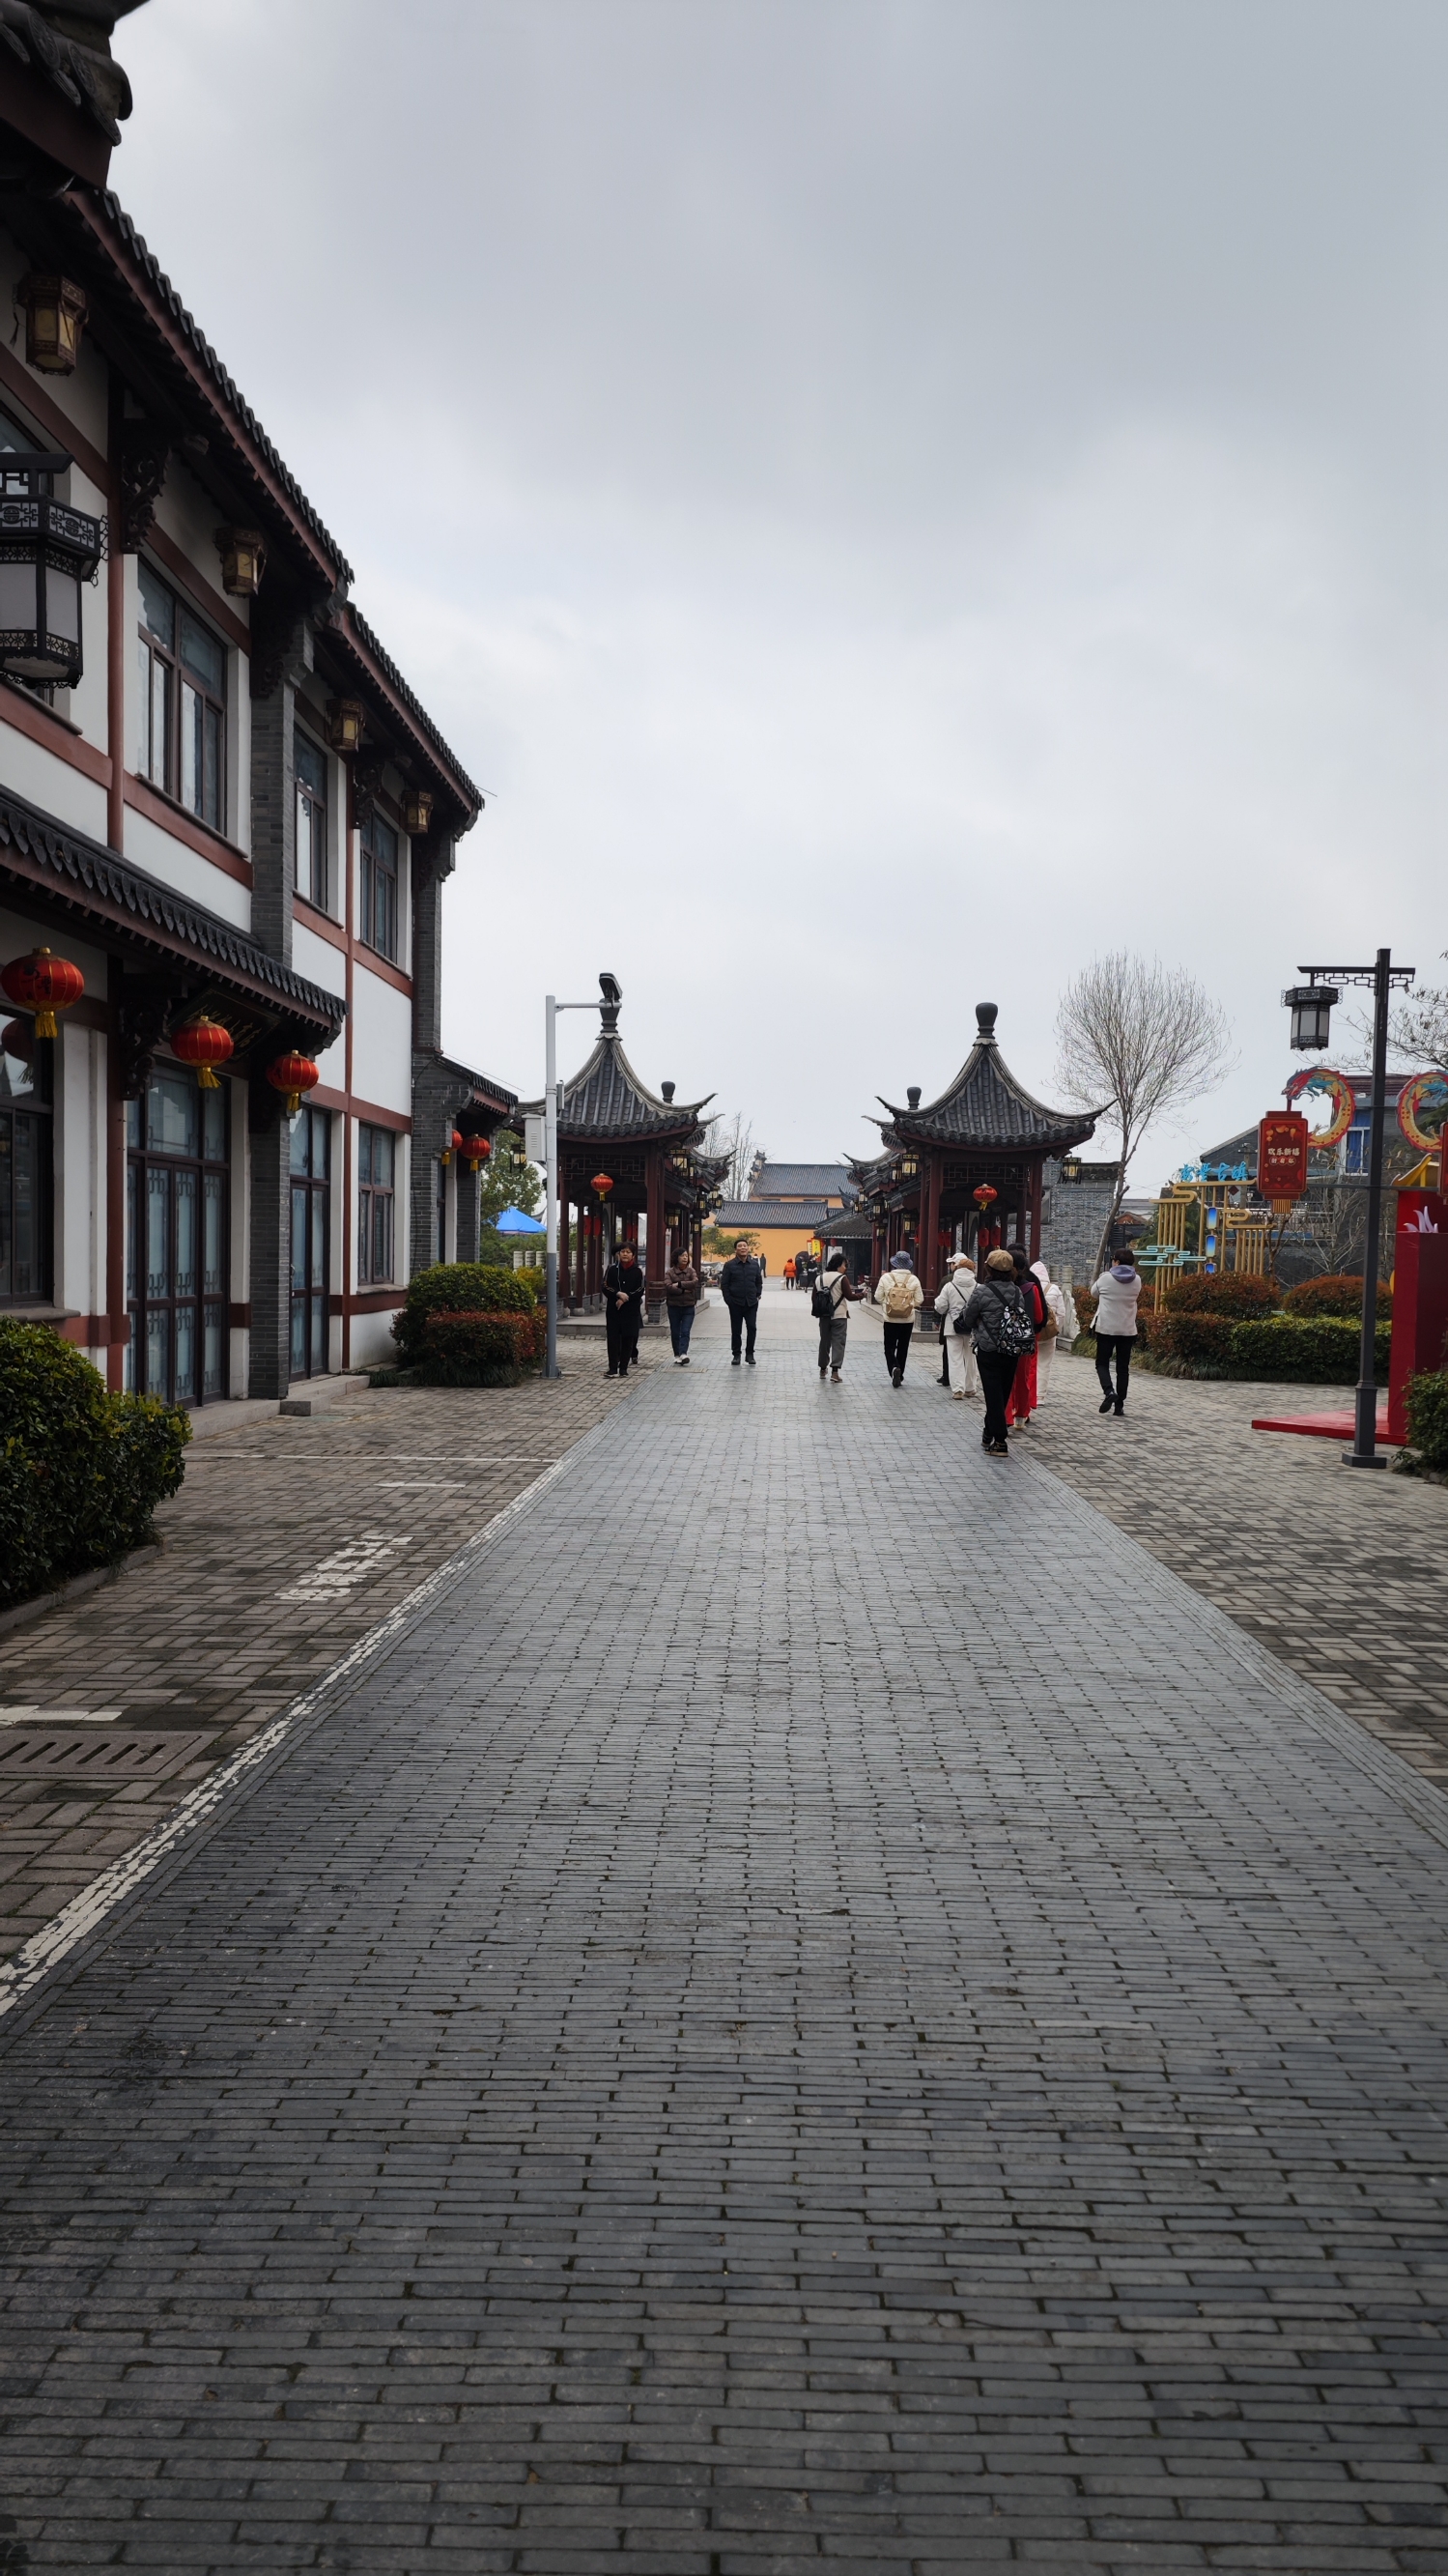 安丰古镇，位于江苏省东台市境内，是一座充满历史底蕴和文化韵味的古镇。它成陆于新石器时代，初属吴越分野